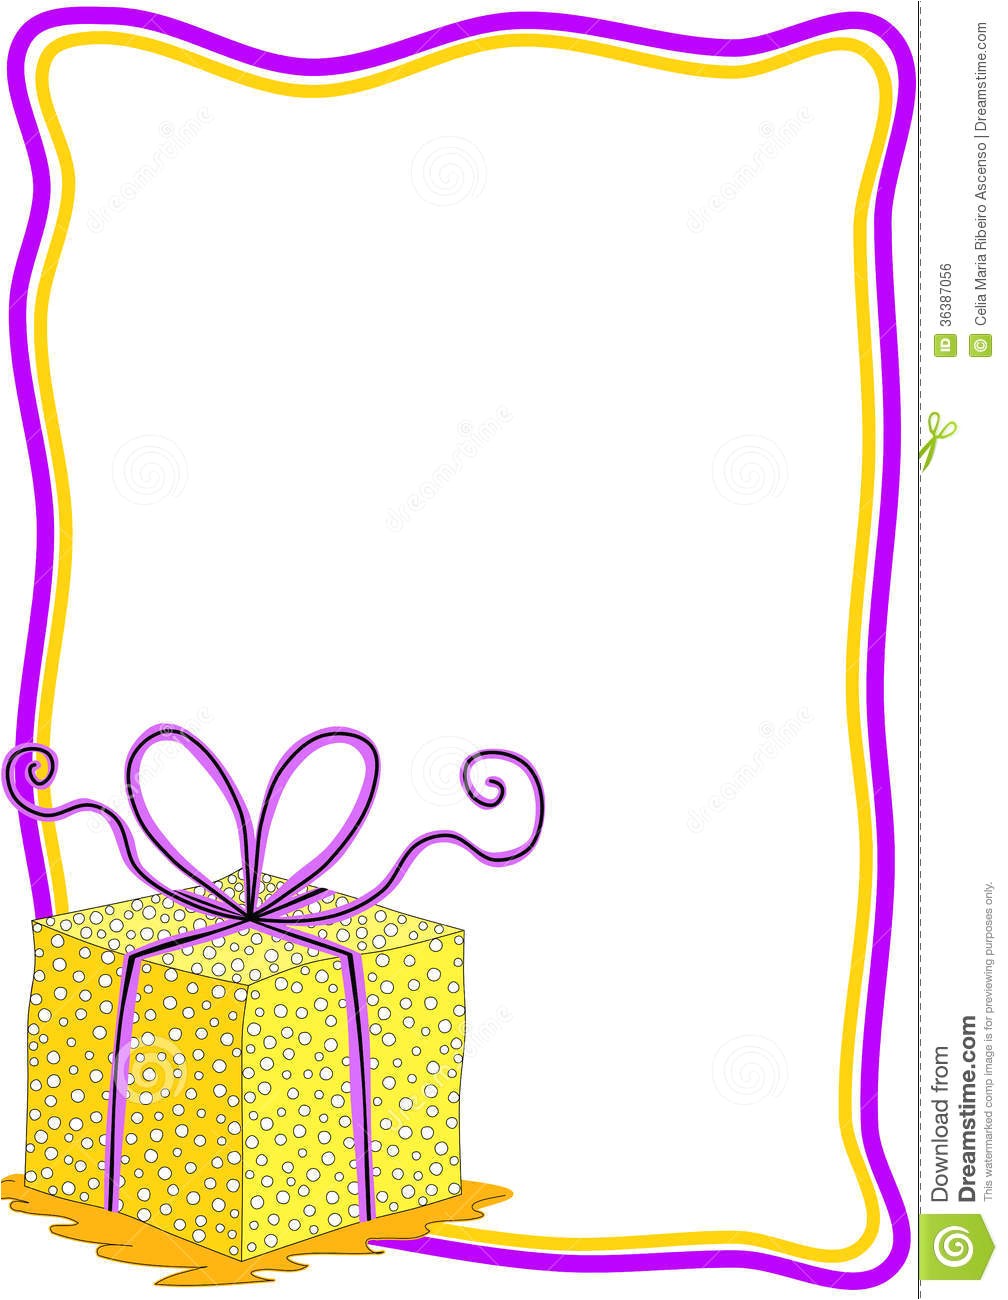 royalty free stock image gift box invitation card frame birthday tag border polka dot image36387056